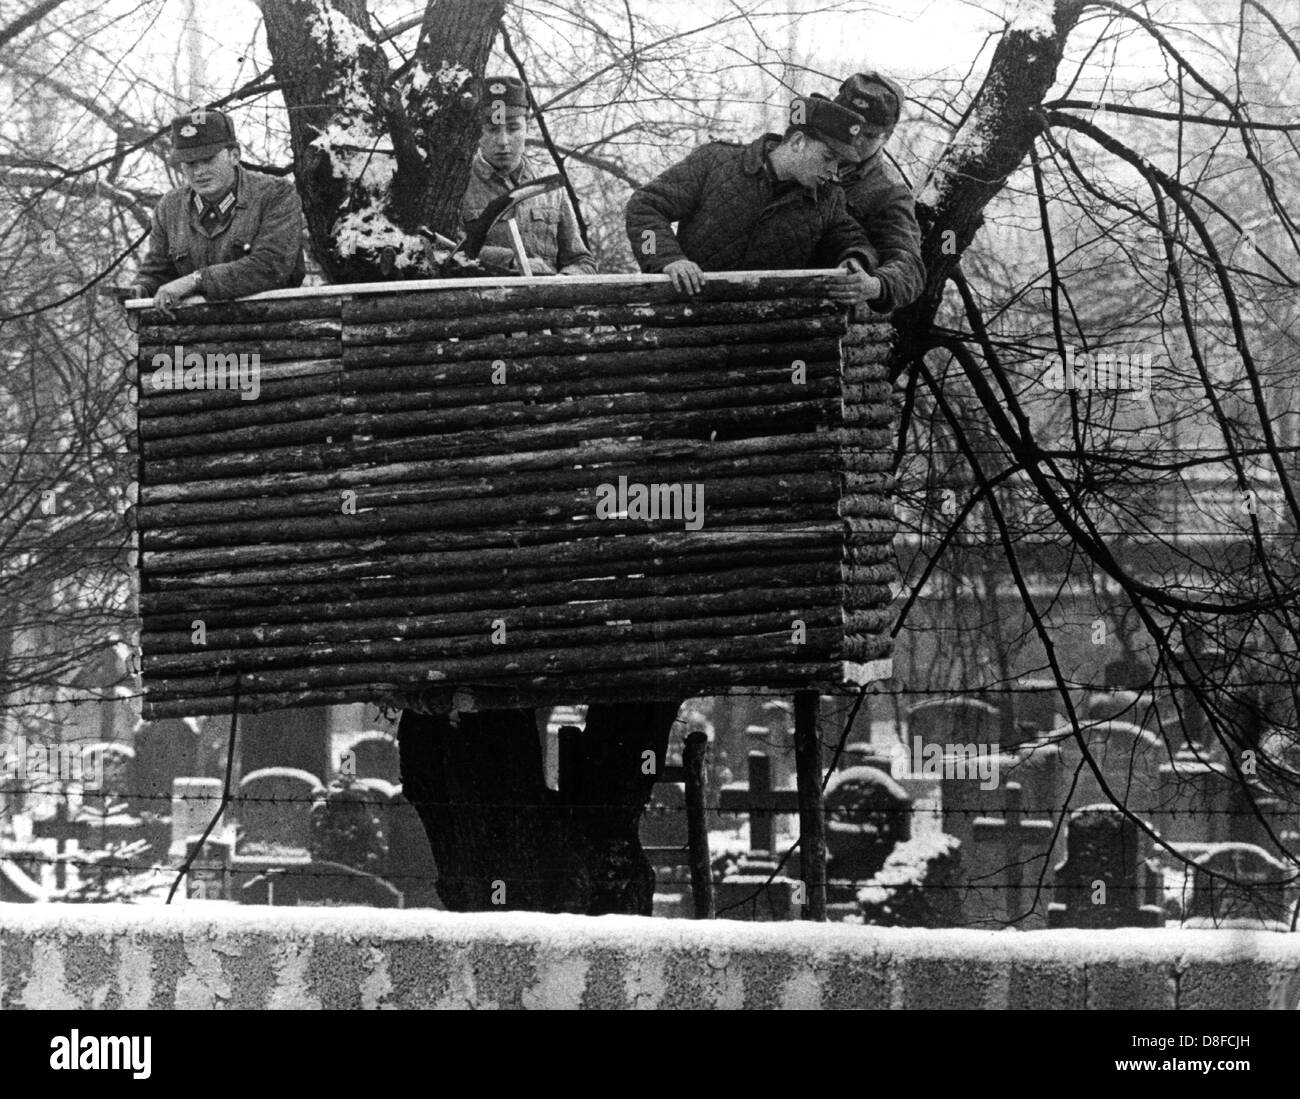 Les forces de police de la RDA errect une tour de garde sur un cimetière à l'Est de Berlin, RDA, en 1961. Banque D'Images